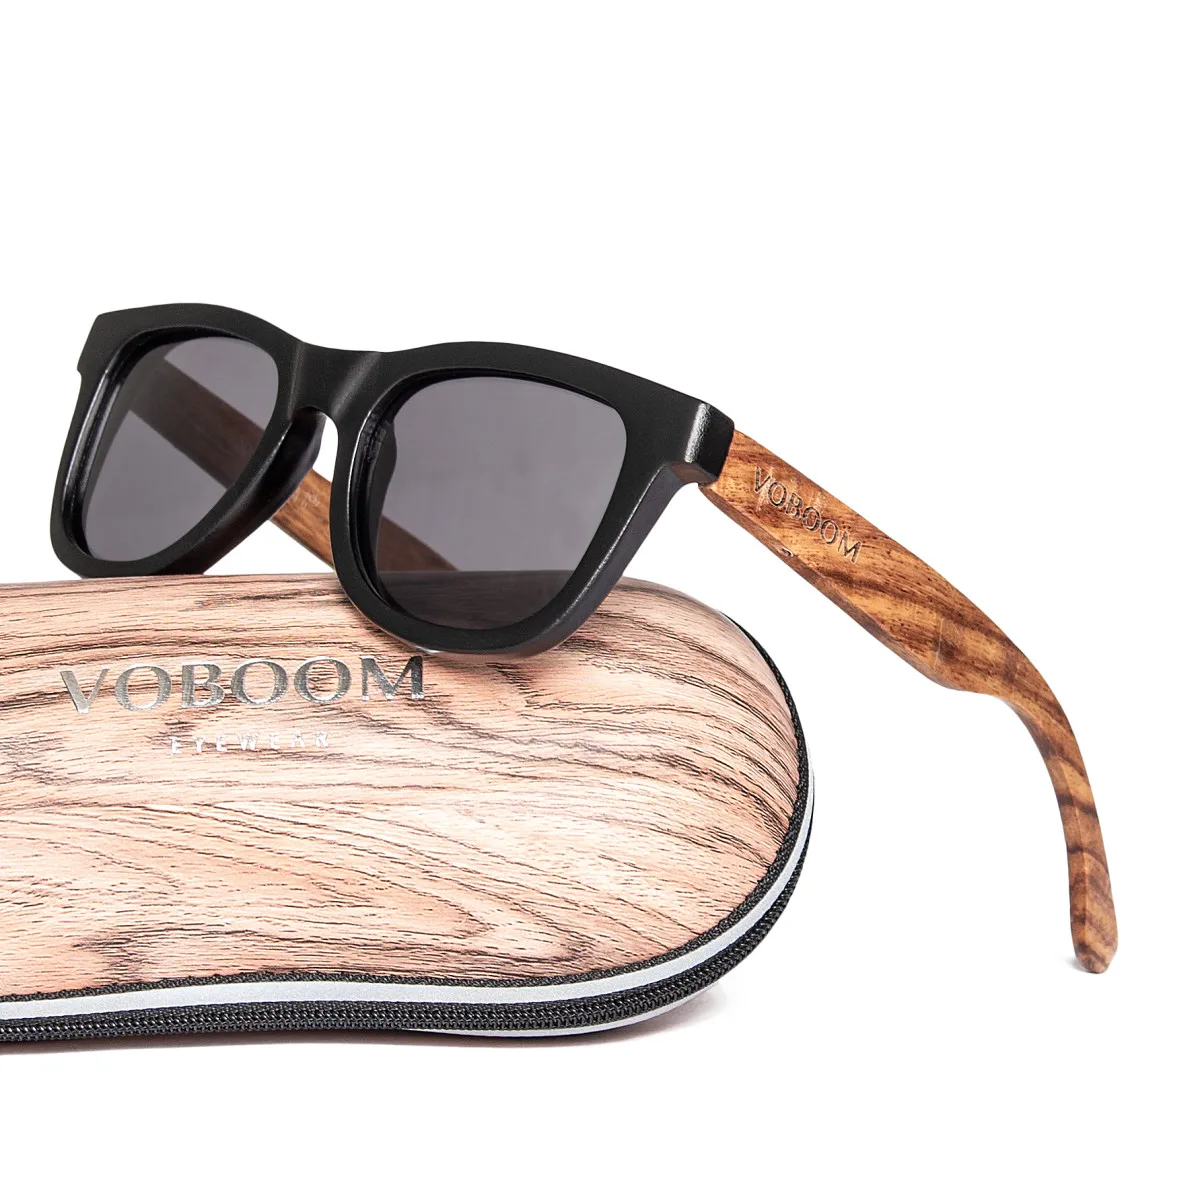 

Деревянные солнцезащитные очки Voboom из натурального бамбука для мужчин и женщин, Ретро стиль, поляризованные зеркальные линзы ручной работы, очки